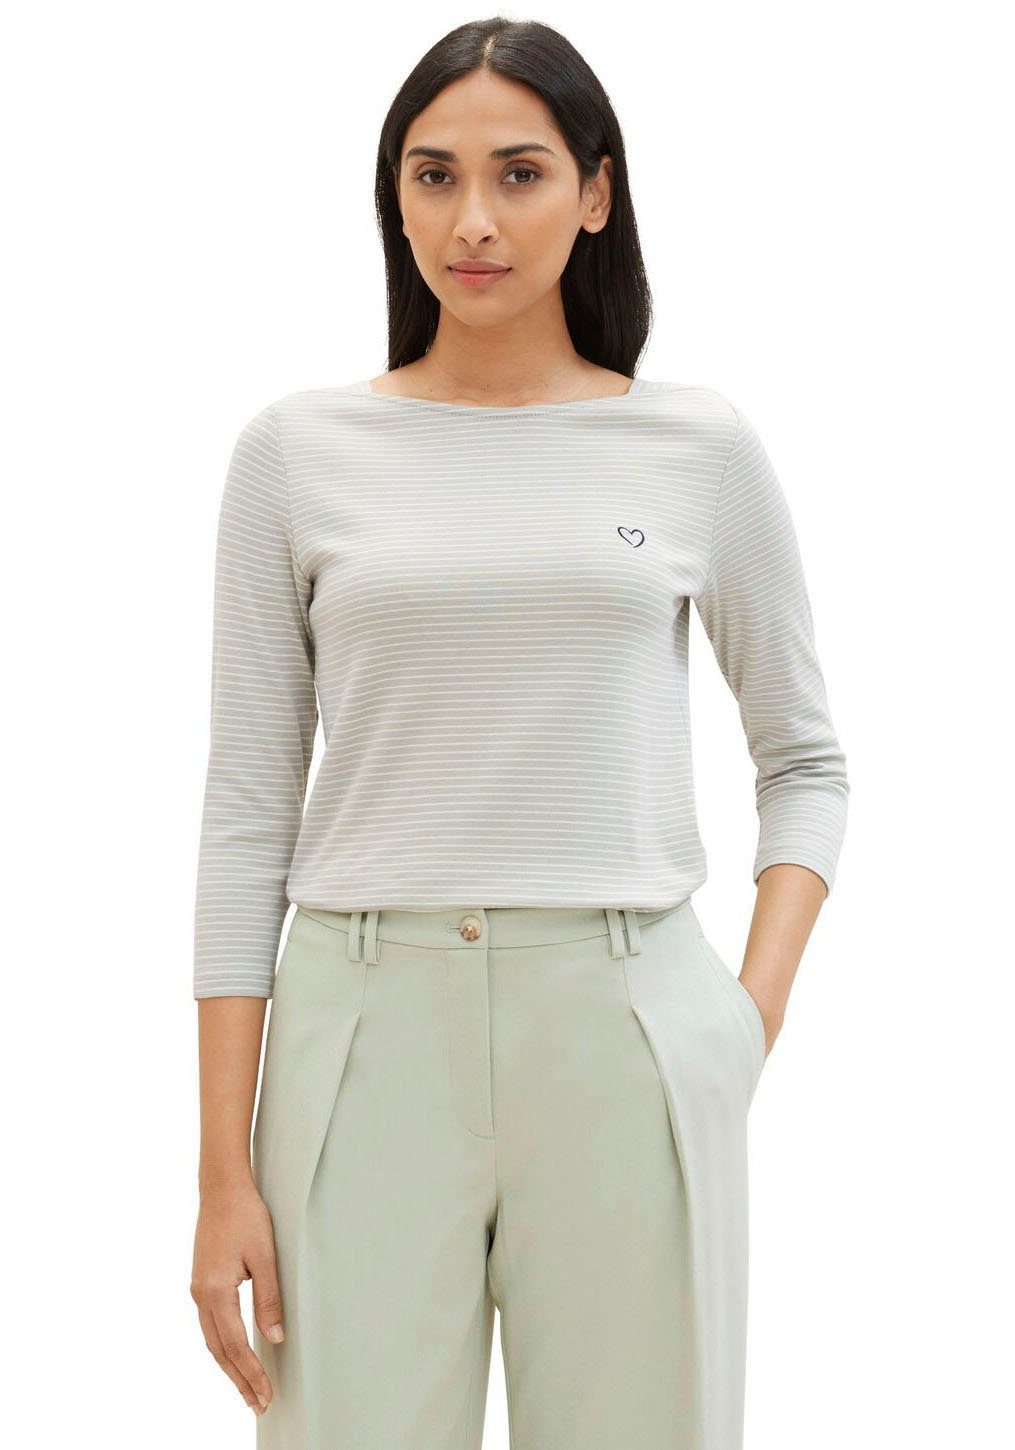 Weiße Shirts 3/4 Arm für Damen online kaufen | OTTO